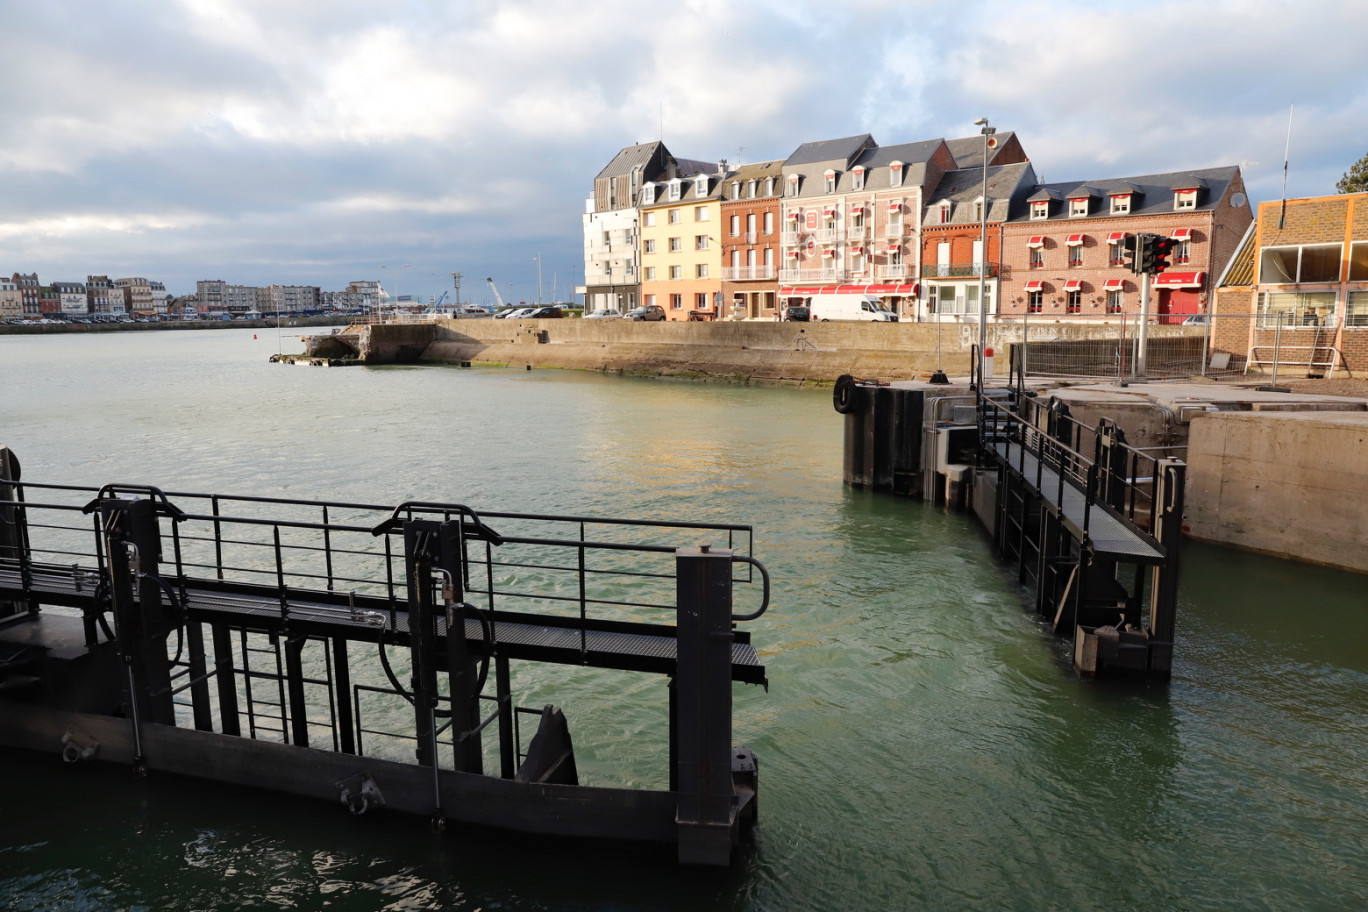 Pêche, commerce et plaisance : le port du Tréport compte sur ses multiples atouts. ©Département de la Seine-Maritime